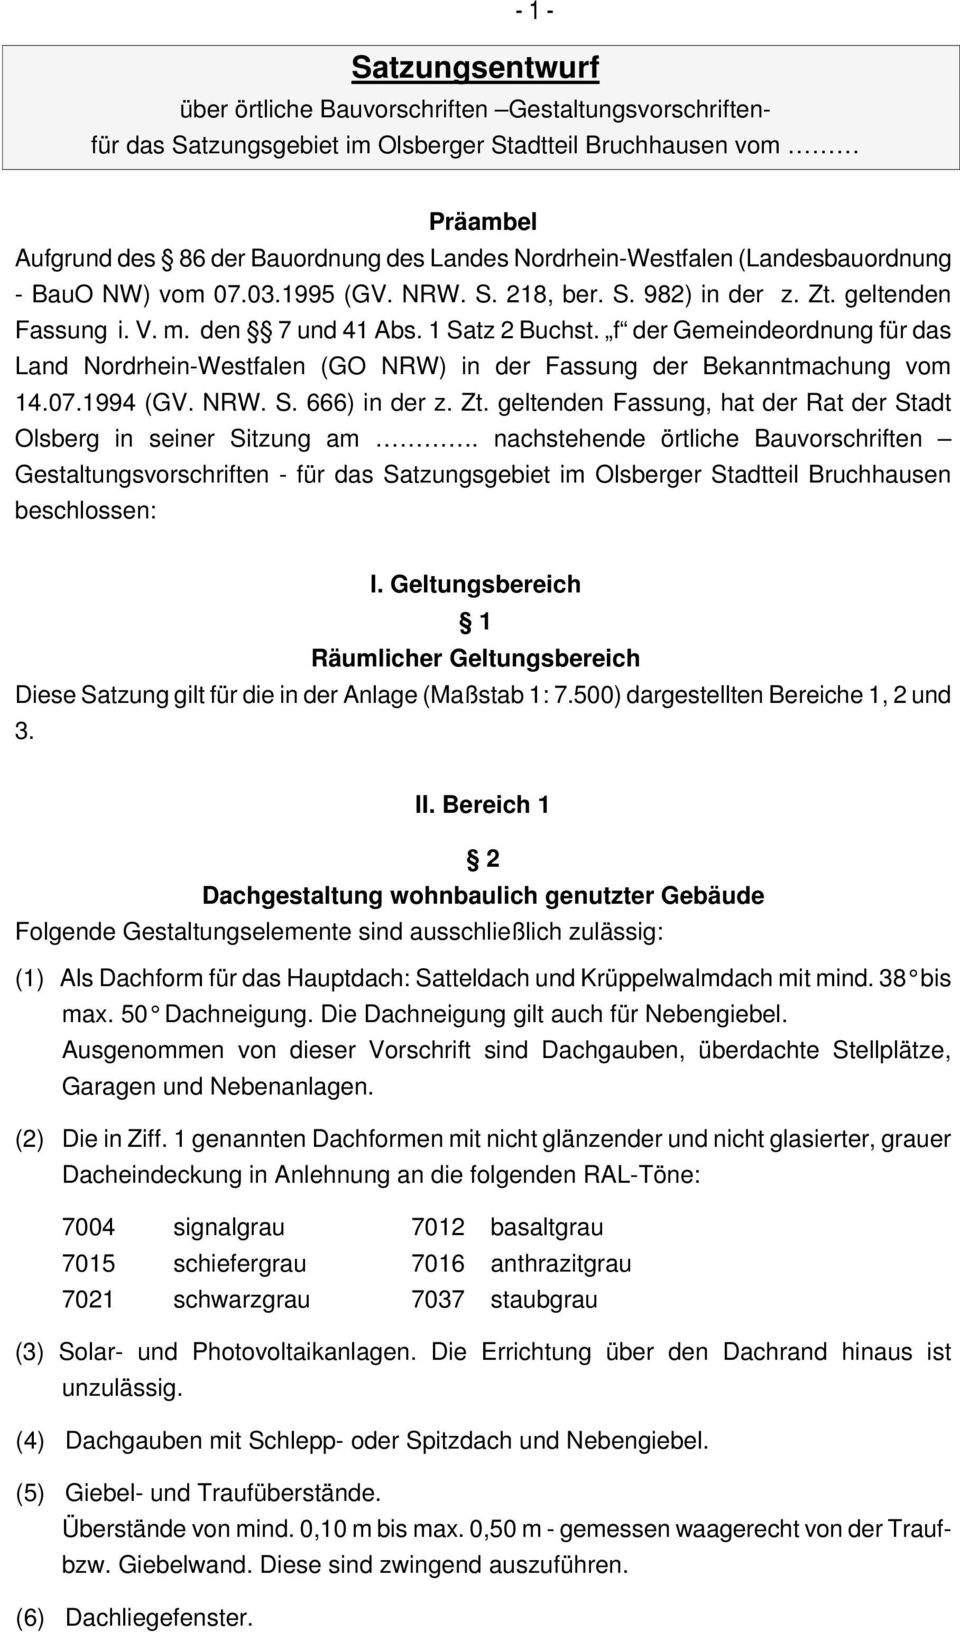 f der Gemeindeordnung für das Land Nordrhein-Westfalen (GO NRW) in der Fassung der Bekanntmachung vom 14.07.1994 (GV. NRW. S. 666) in der z. Zt.